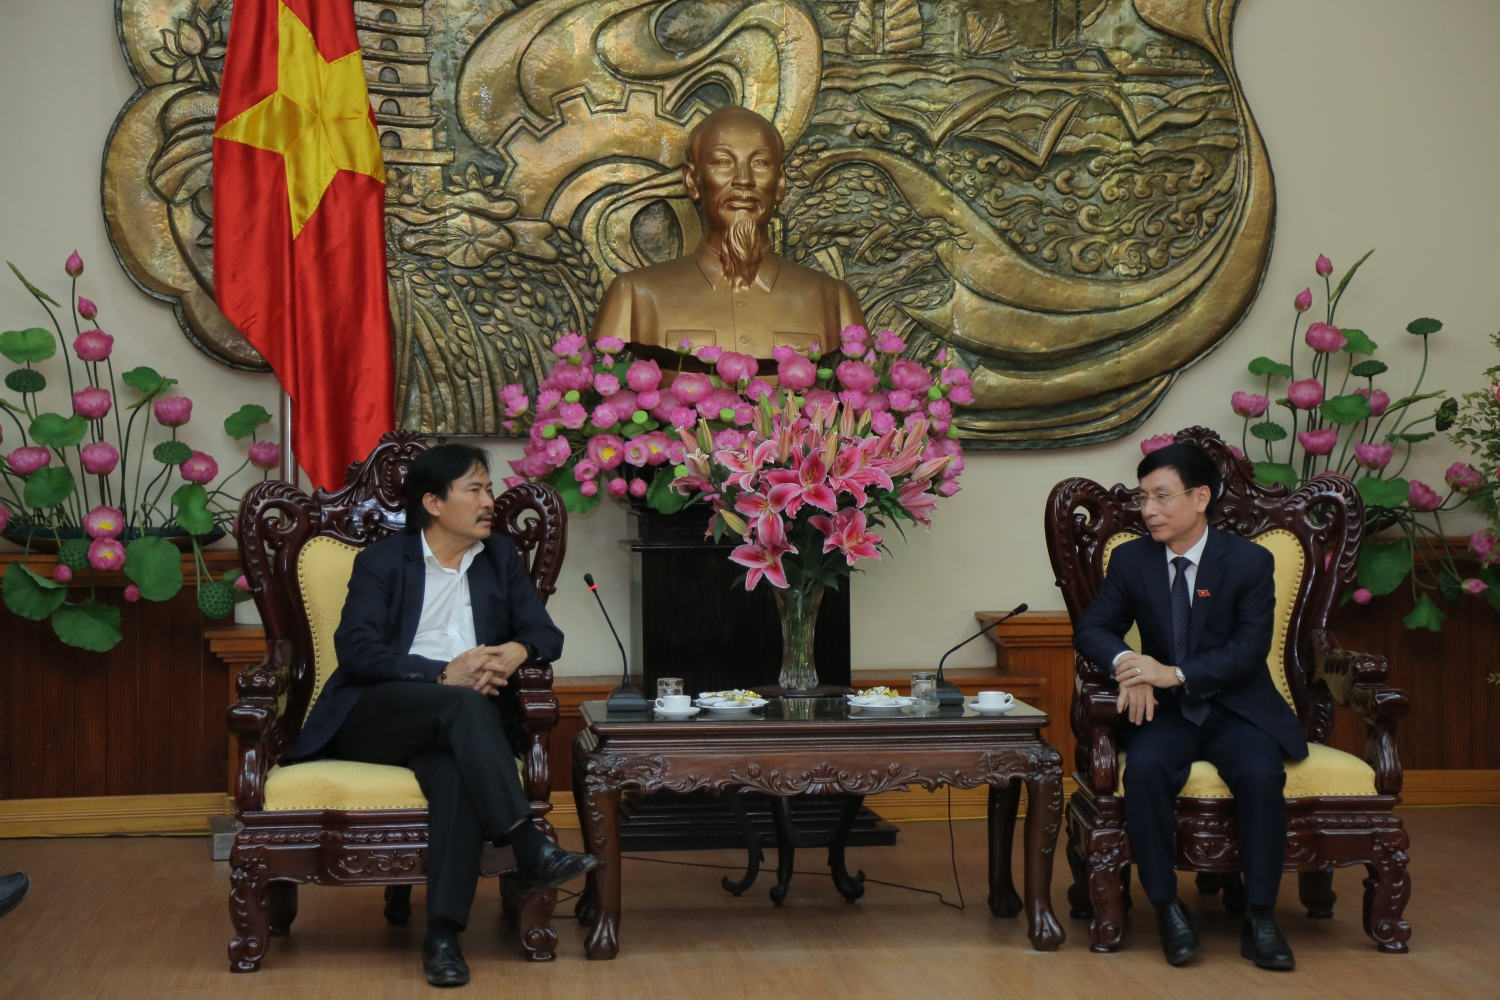 Petrovietnam ủng hộ chương trình Tết vì người nghèo tỉnh Nam Định 500 triệu đồng